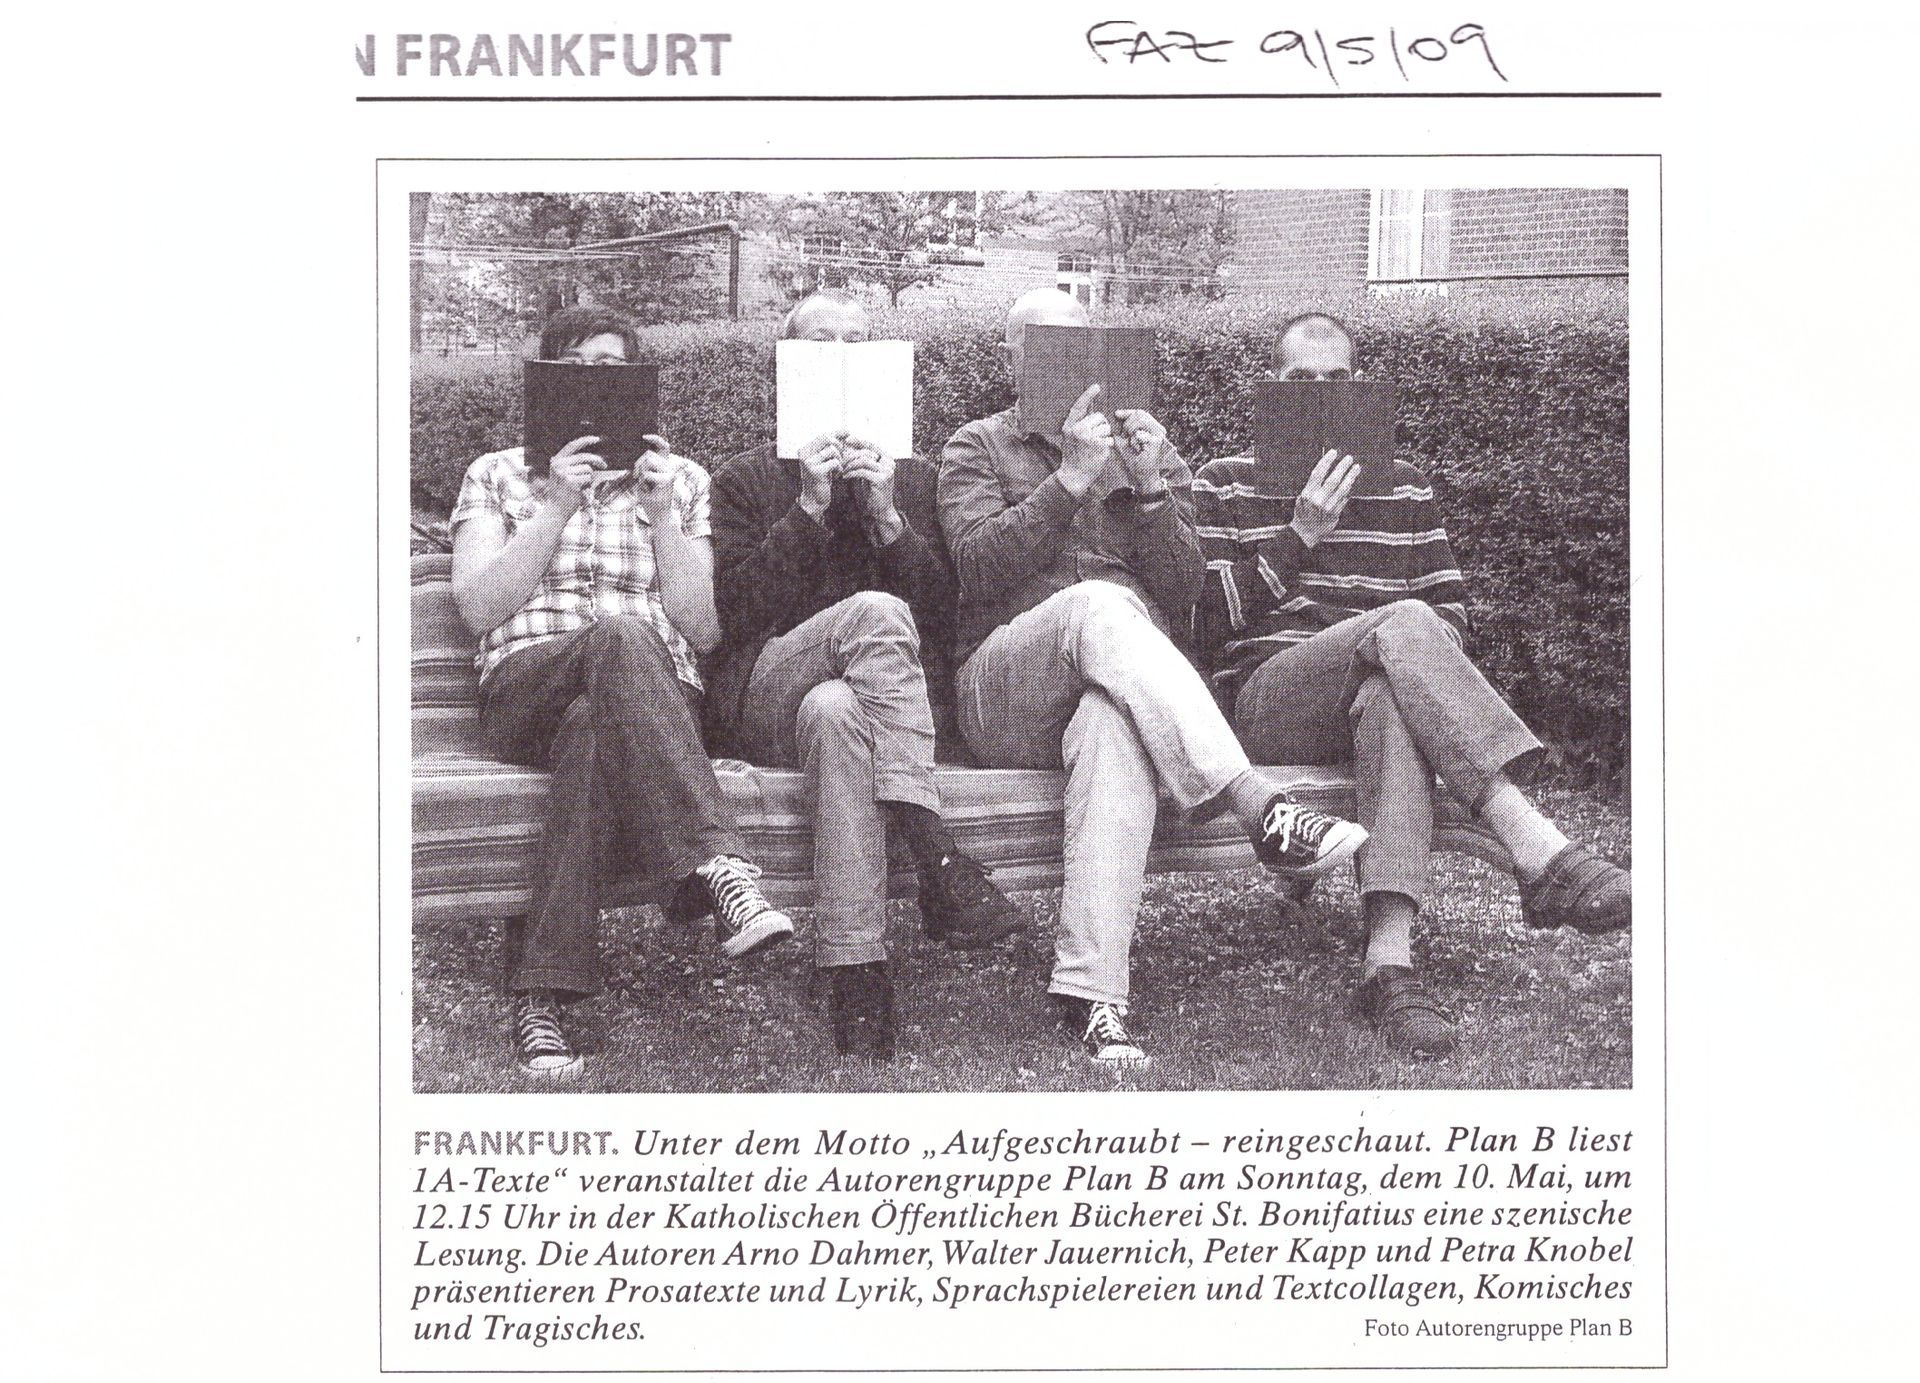 Frankfurter Allgemeine Zeitung vom 9. 5. 2009 (Petra Knobel, Peter Kapp, Walter Jauernich, Arno Dahmer)